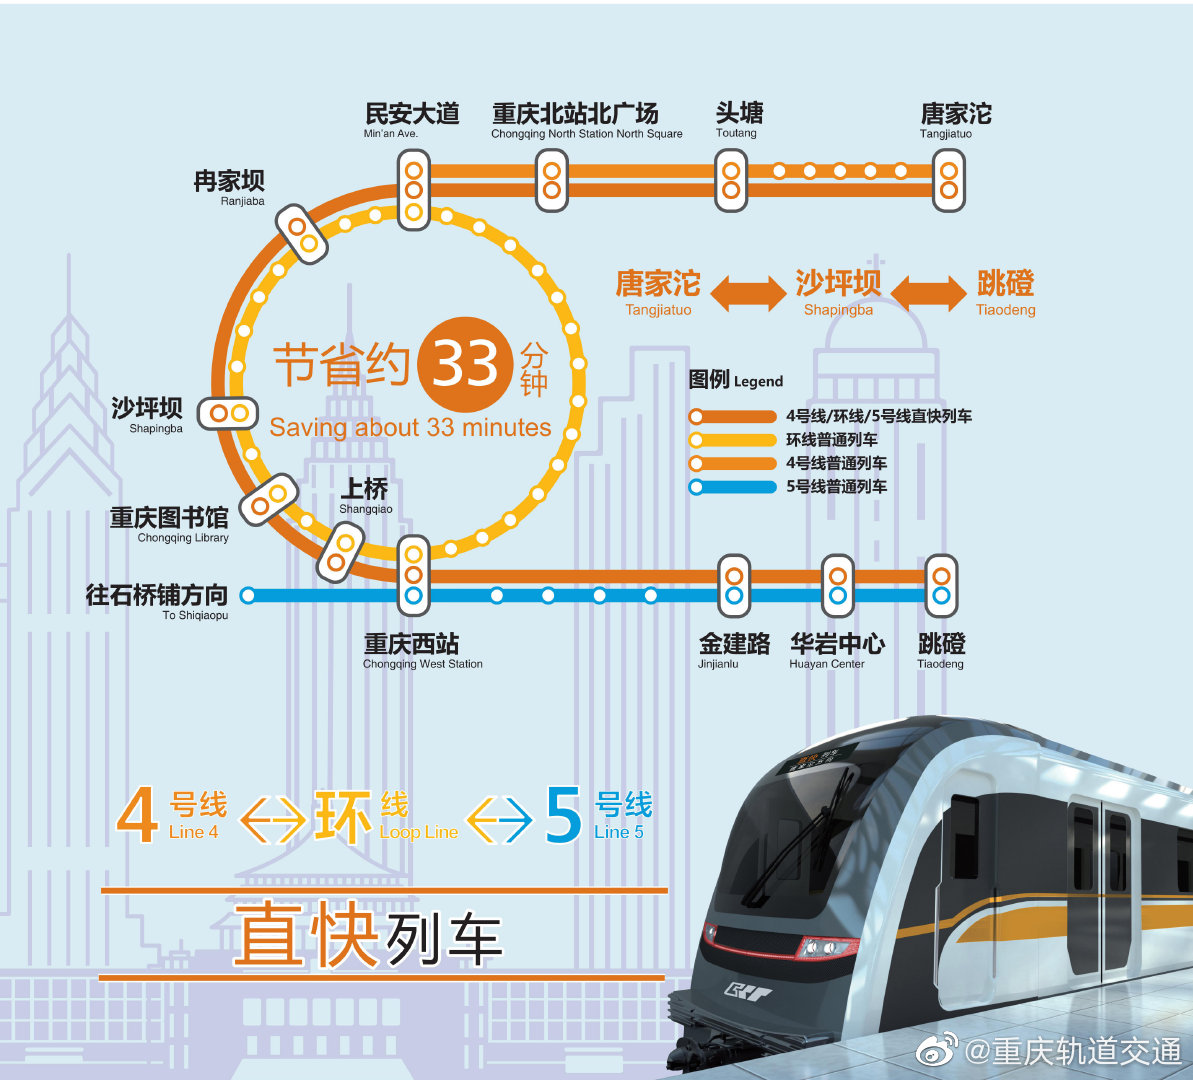 重庆轨道交通将实现三线互联互通：无需换乘的直快车，从唐家沱行驶至跳磴仅需 59 分钟